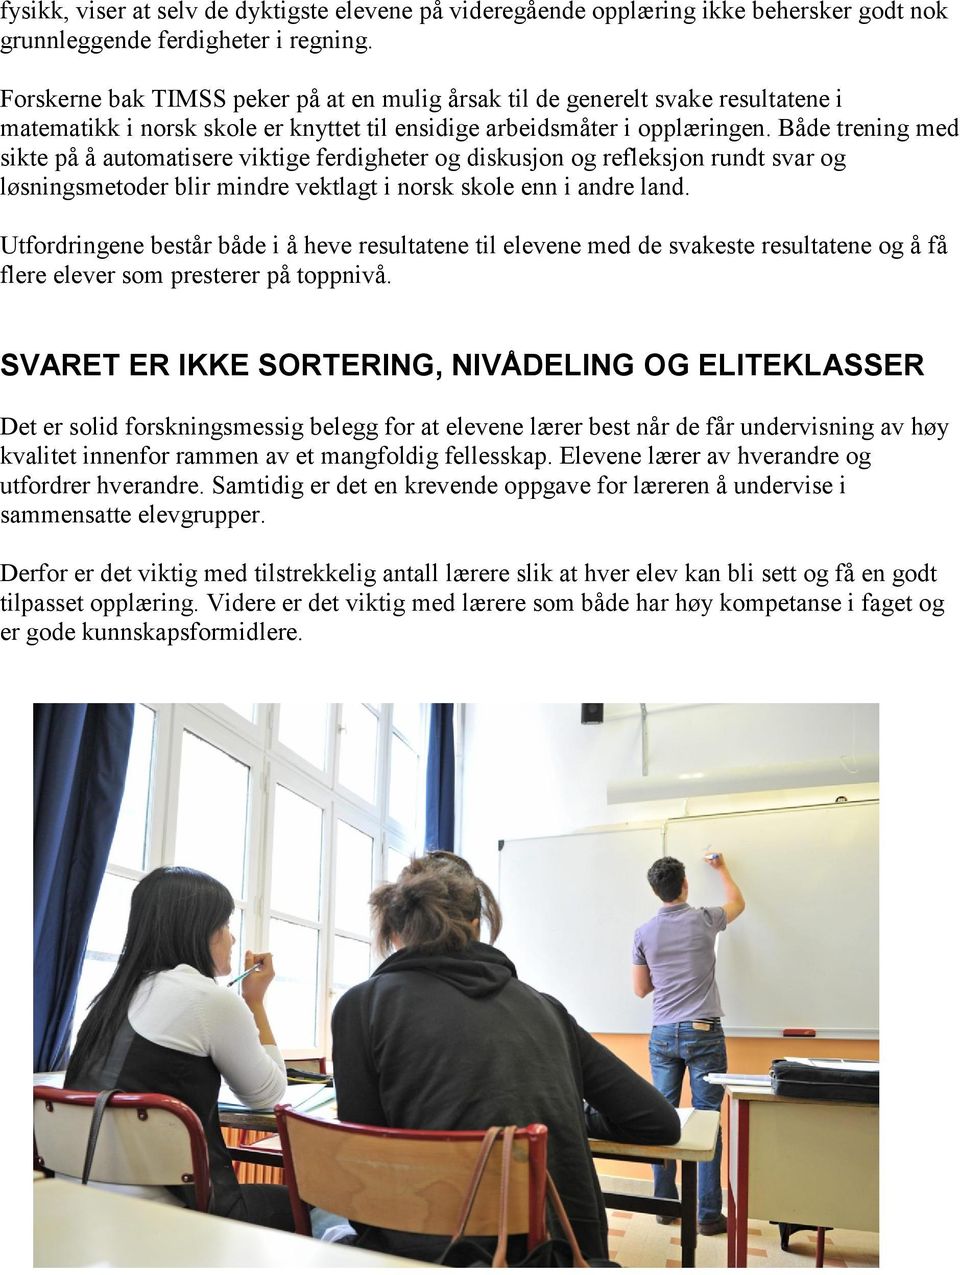 Både trening med sikte på å automatisere viktige ferdigheter og diskusjon og refleksjon rundt svar og løsningsmetoder blir mindre vektlagt i norsk skole enn i andre land.